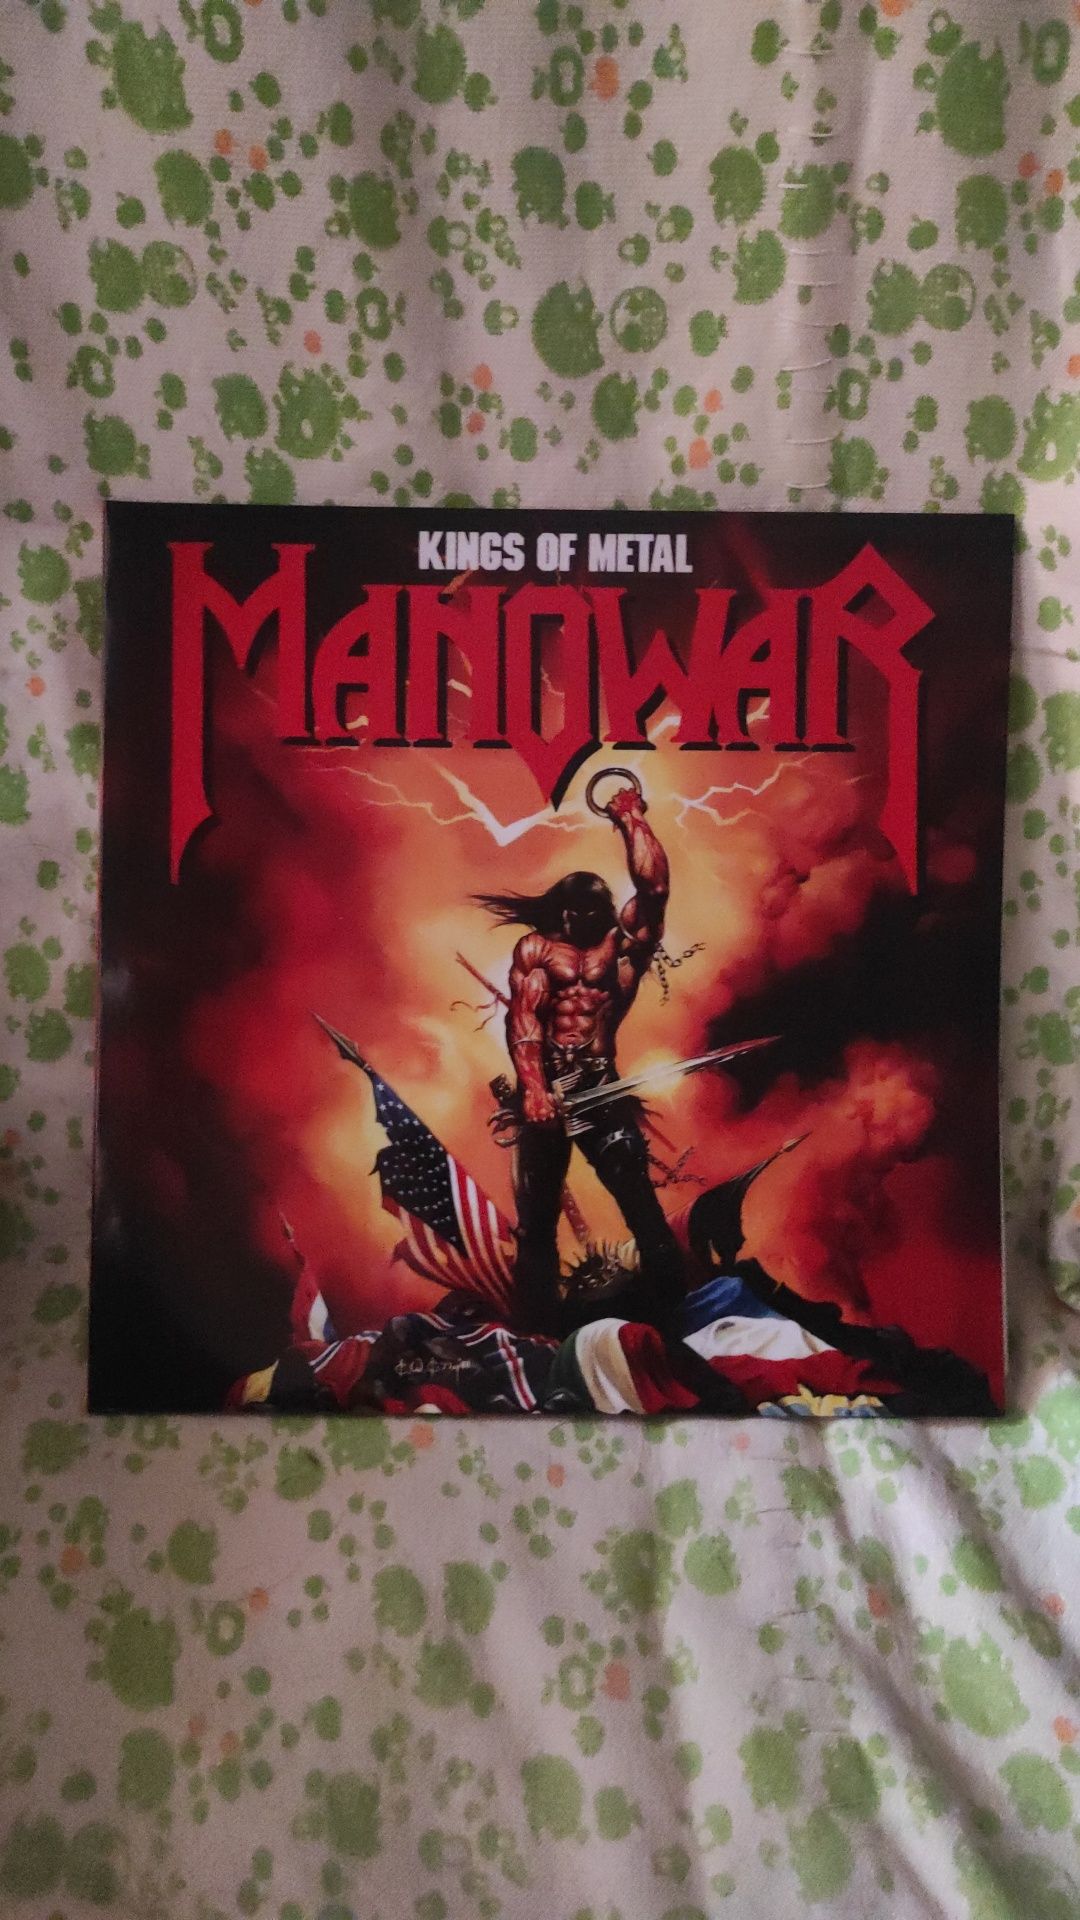 Manowar "kings of metal". 1988.